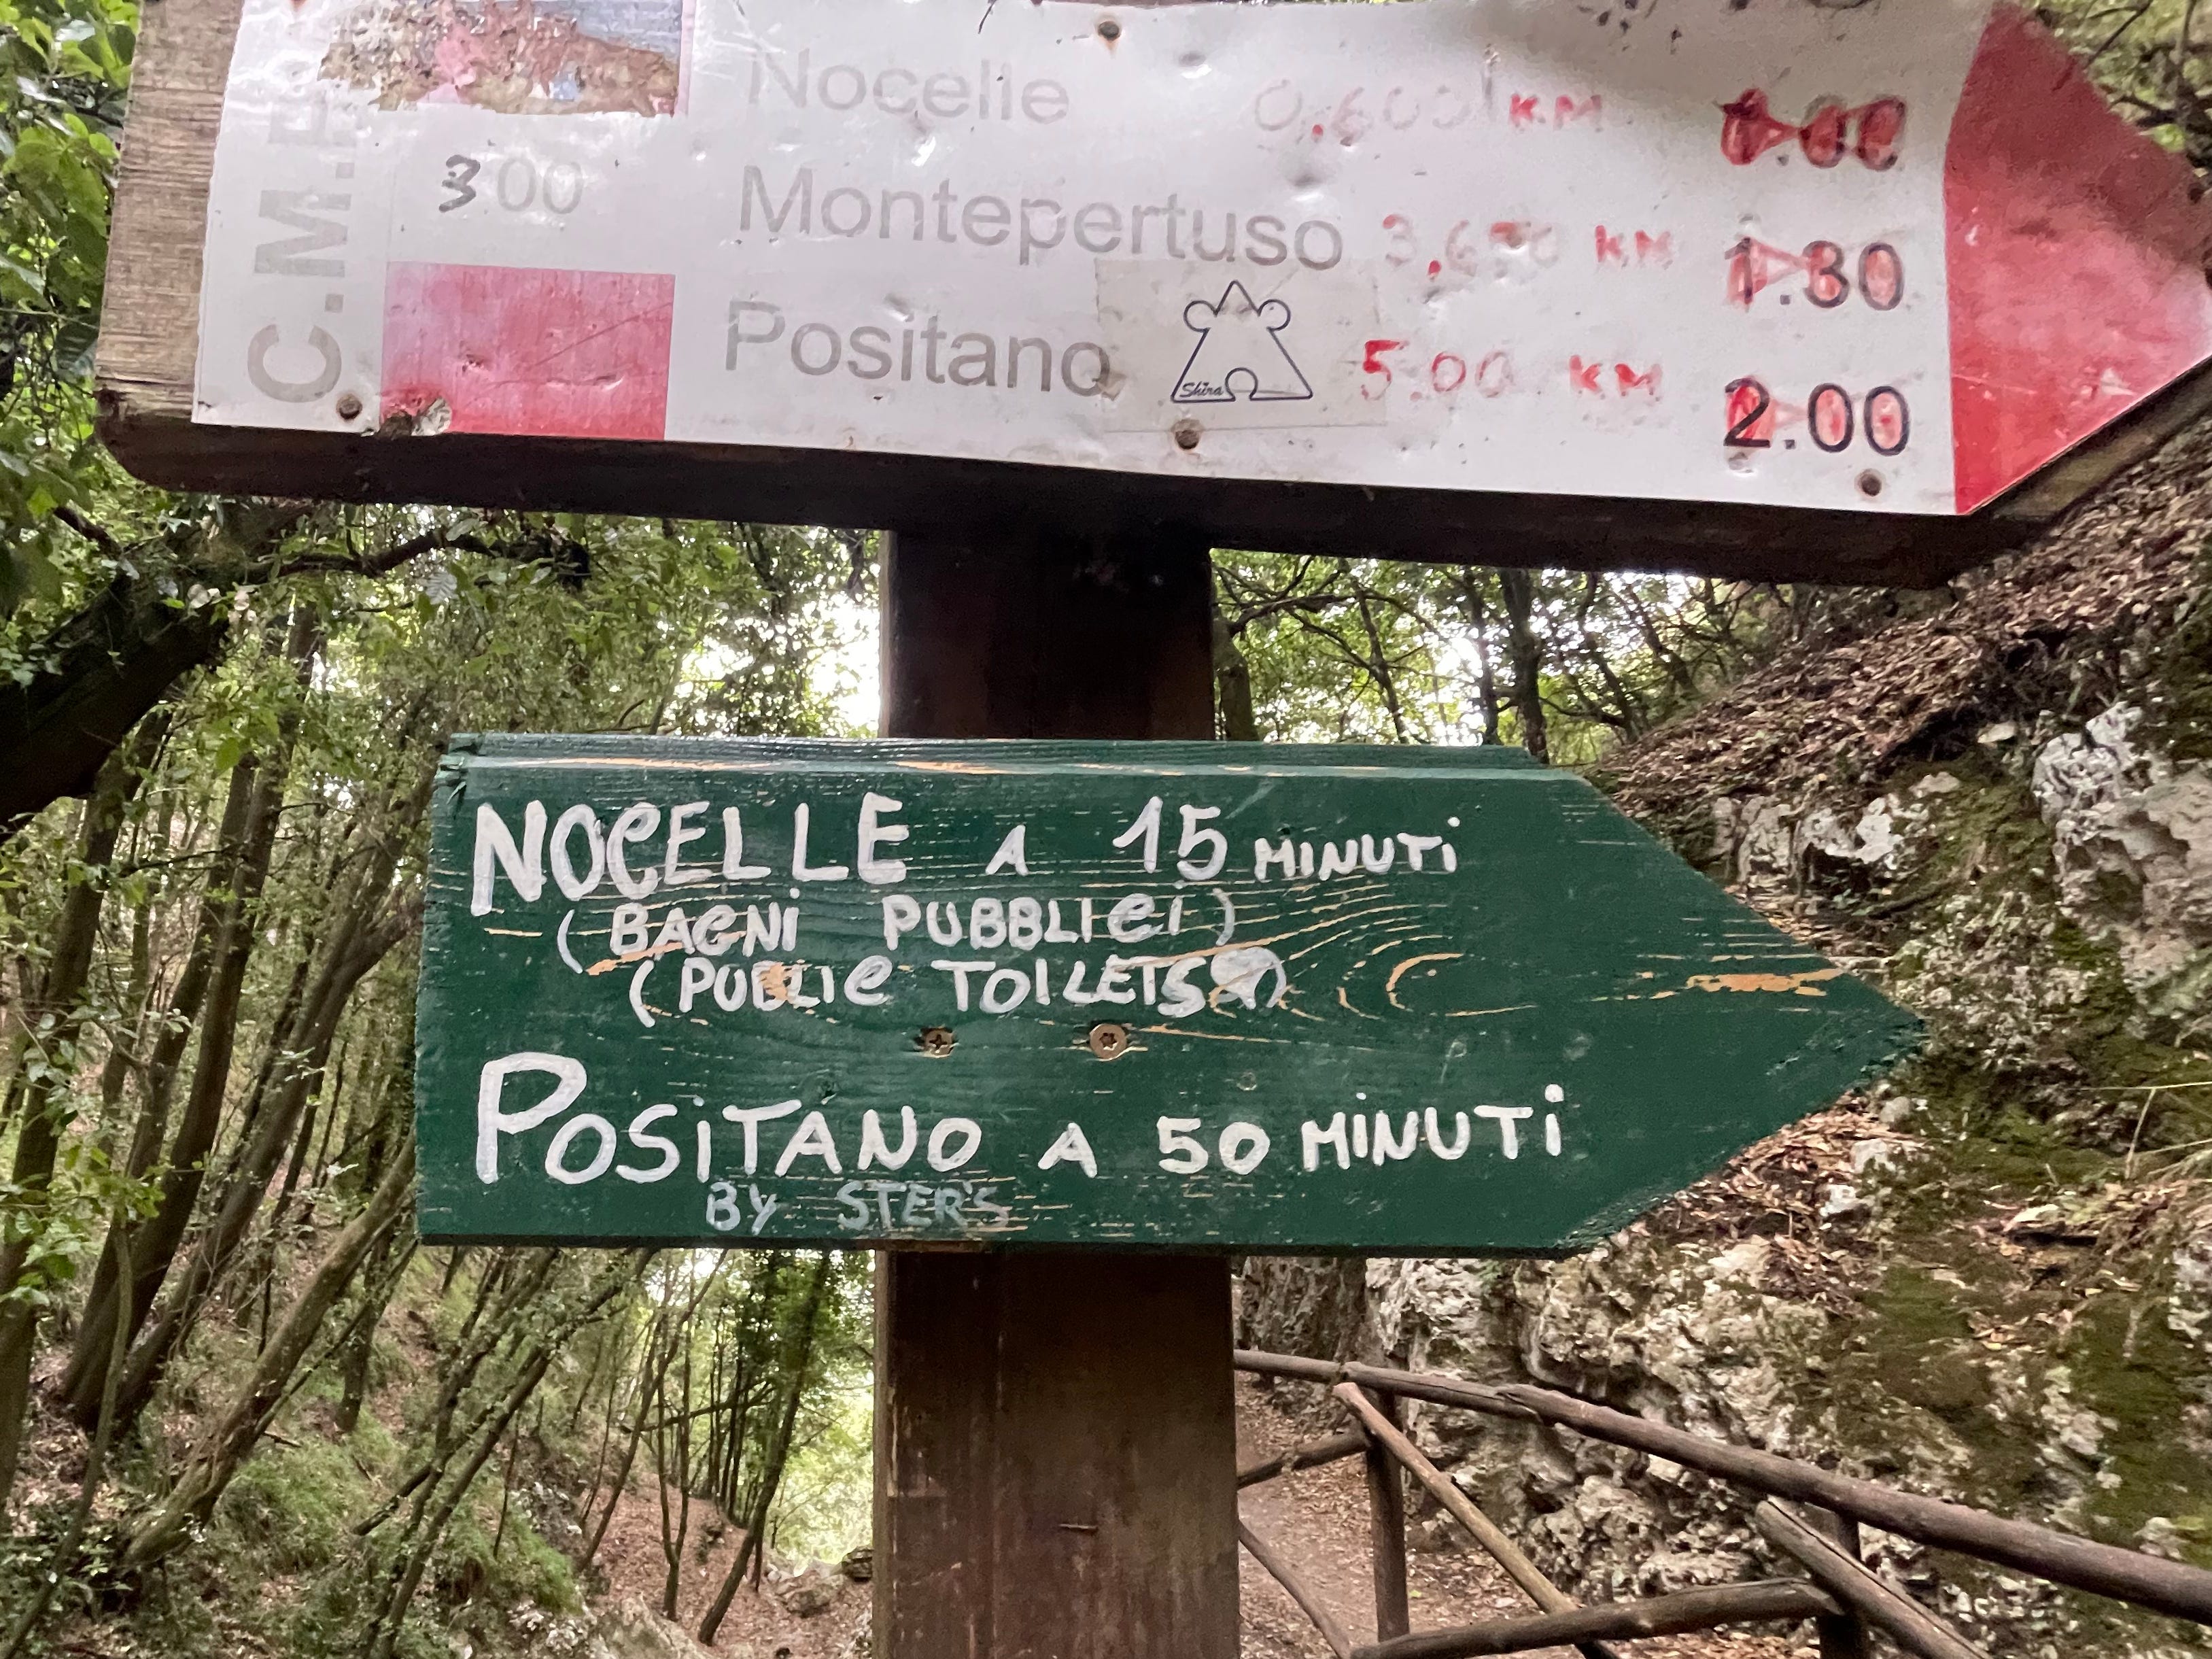 Zwei nach rechts weisende Schilder.  Auf dem unteren Schild steht sowohl auf Italienisch als auch auf Englisch: „Nocelle, 15 Minuten (öffentliche Toiletten)“ und „Positano 50 Minuten über Stufen“.